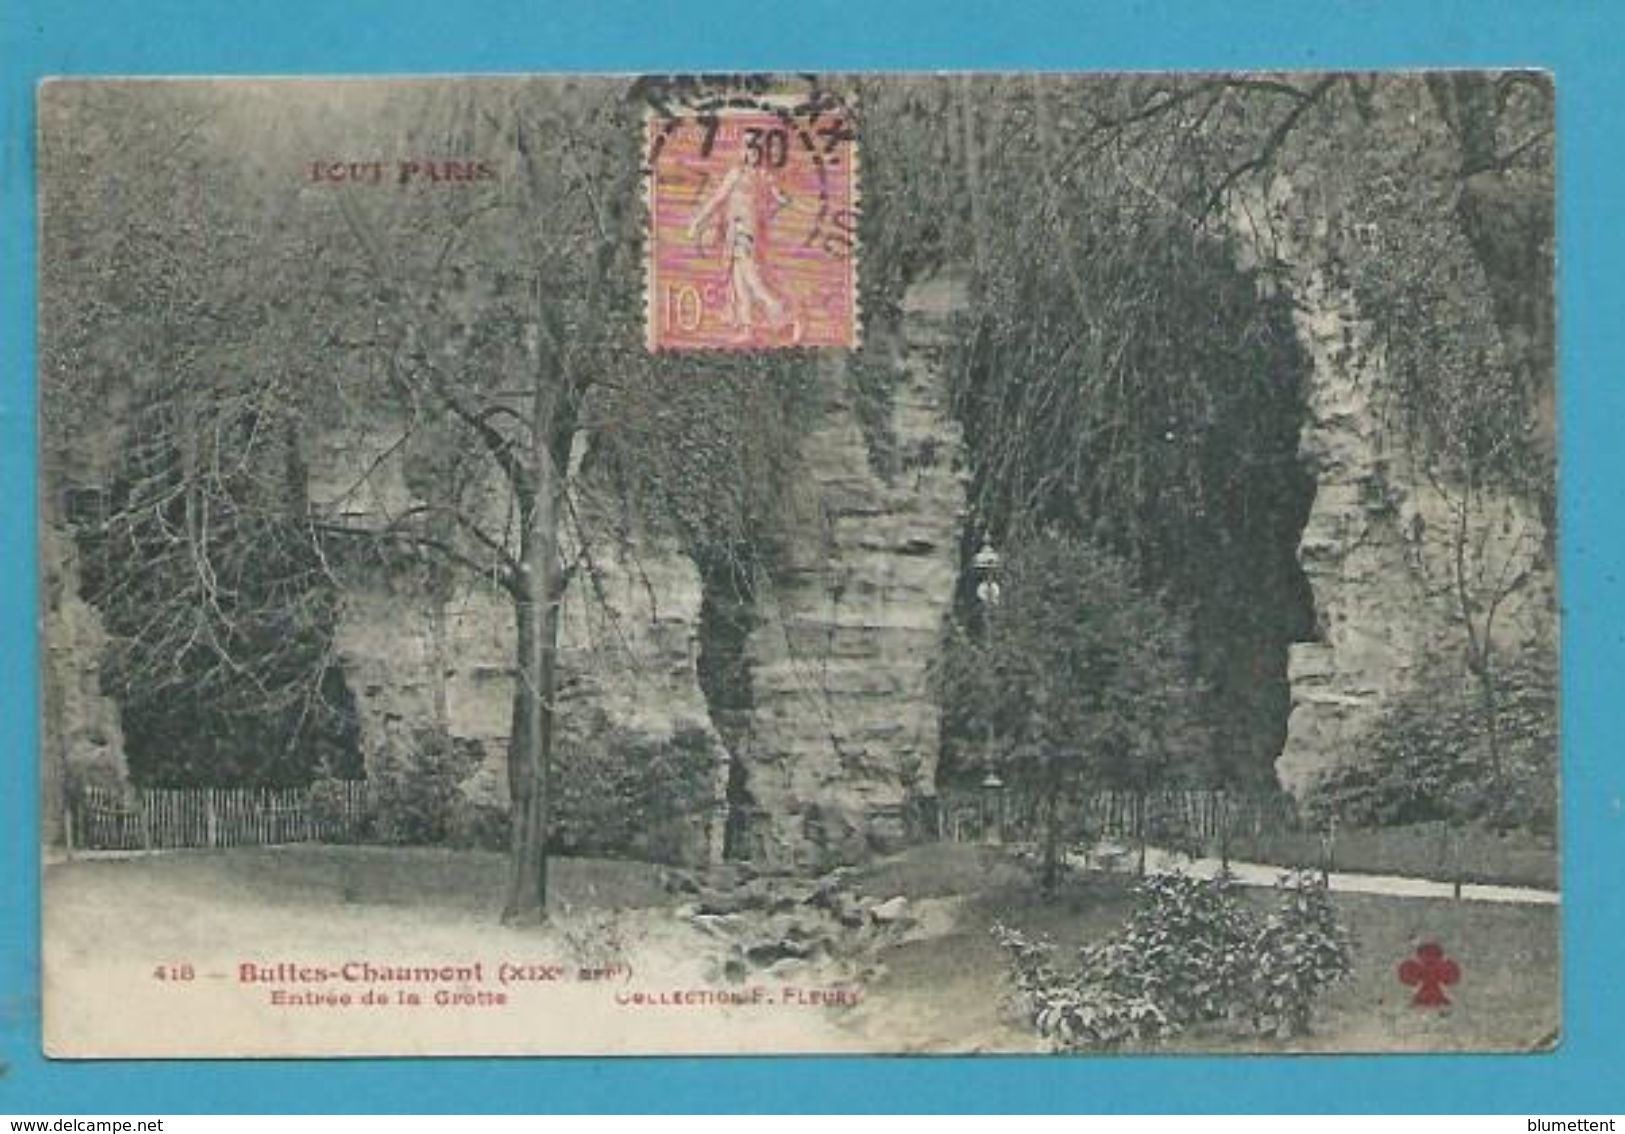 CPA TOUT PARIS 418 - Buttes Chaumont Entrée De La Grotte (XIXème Arrt.) Ed. FLEURY - Distretto: 19